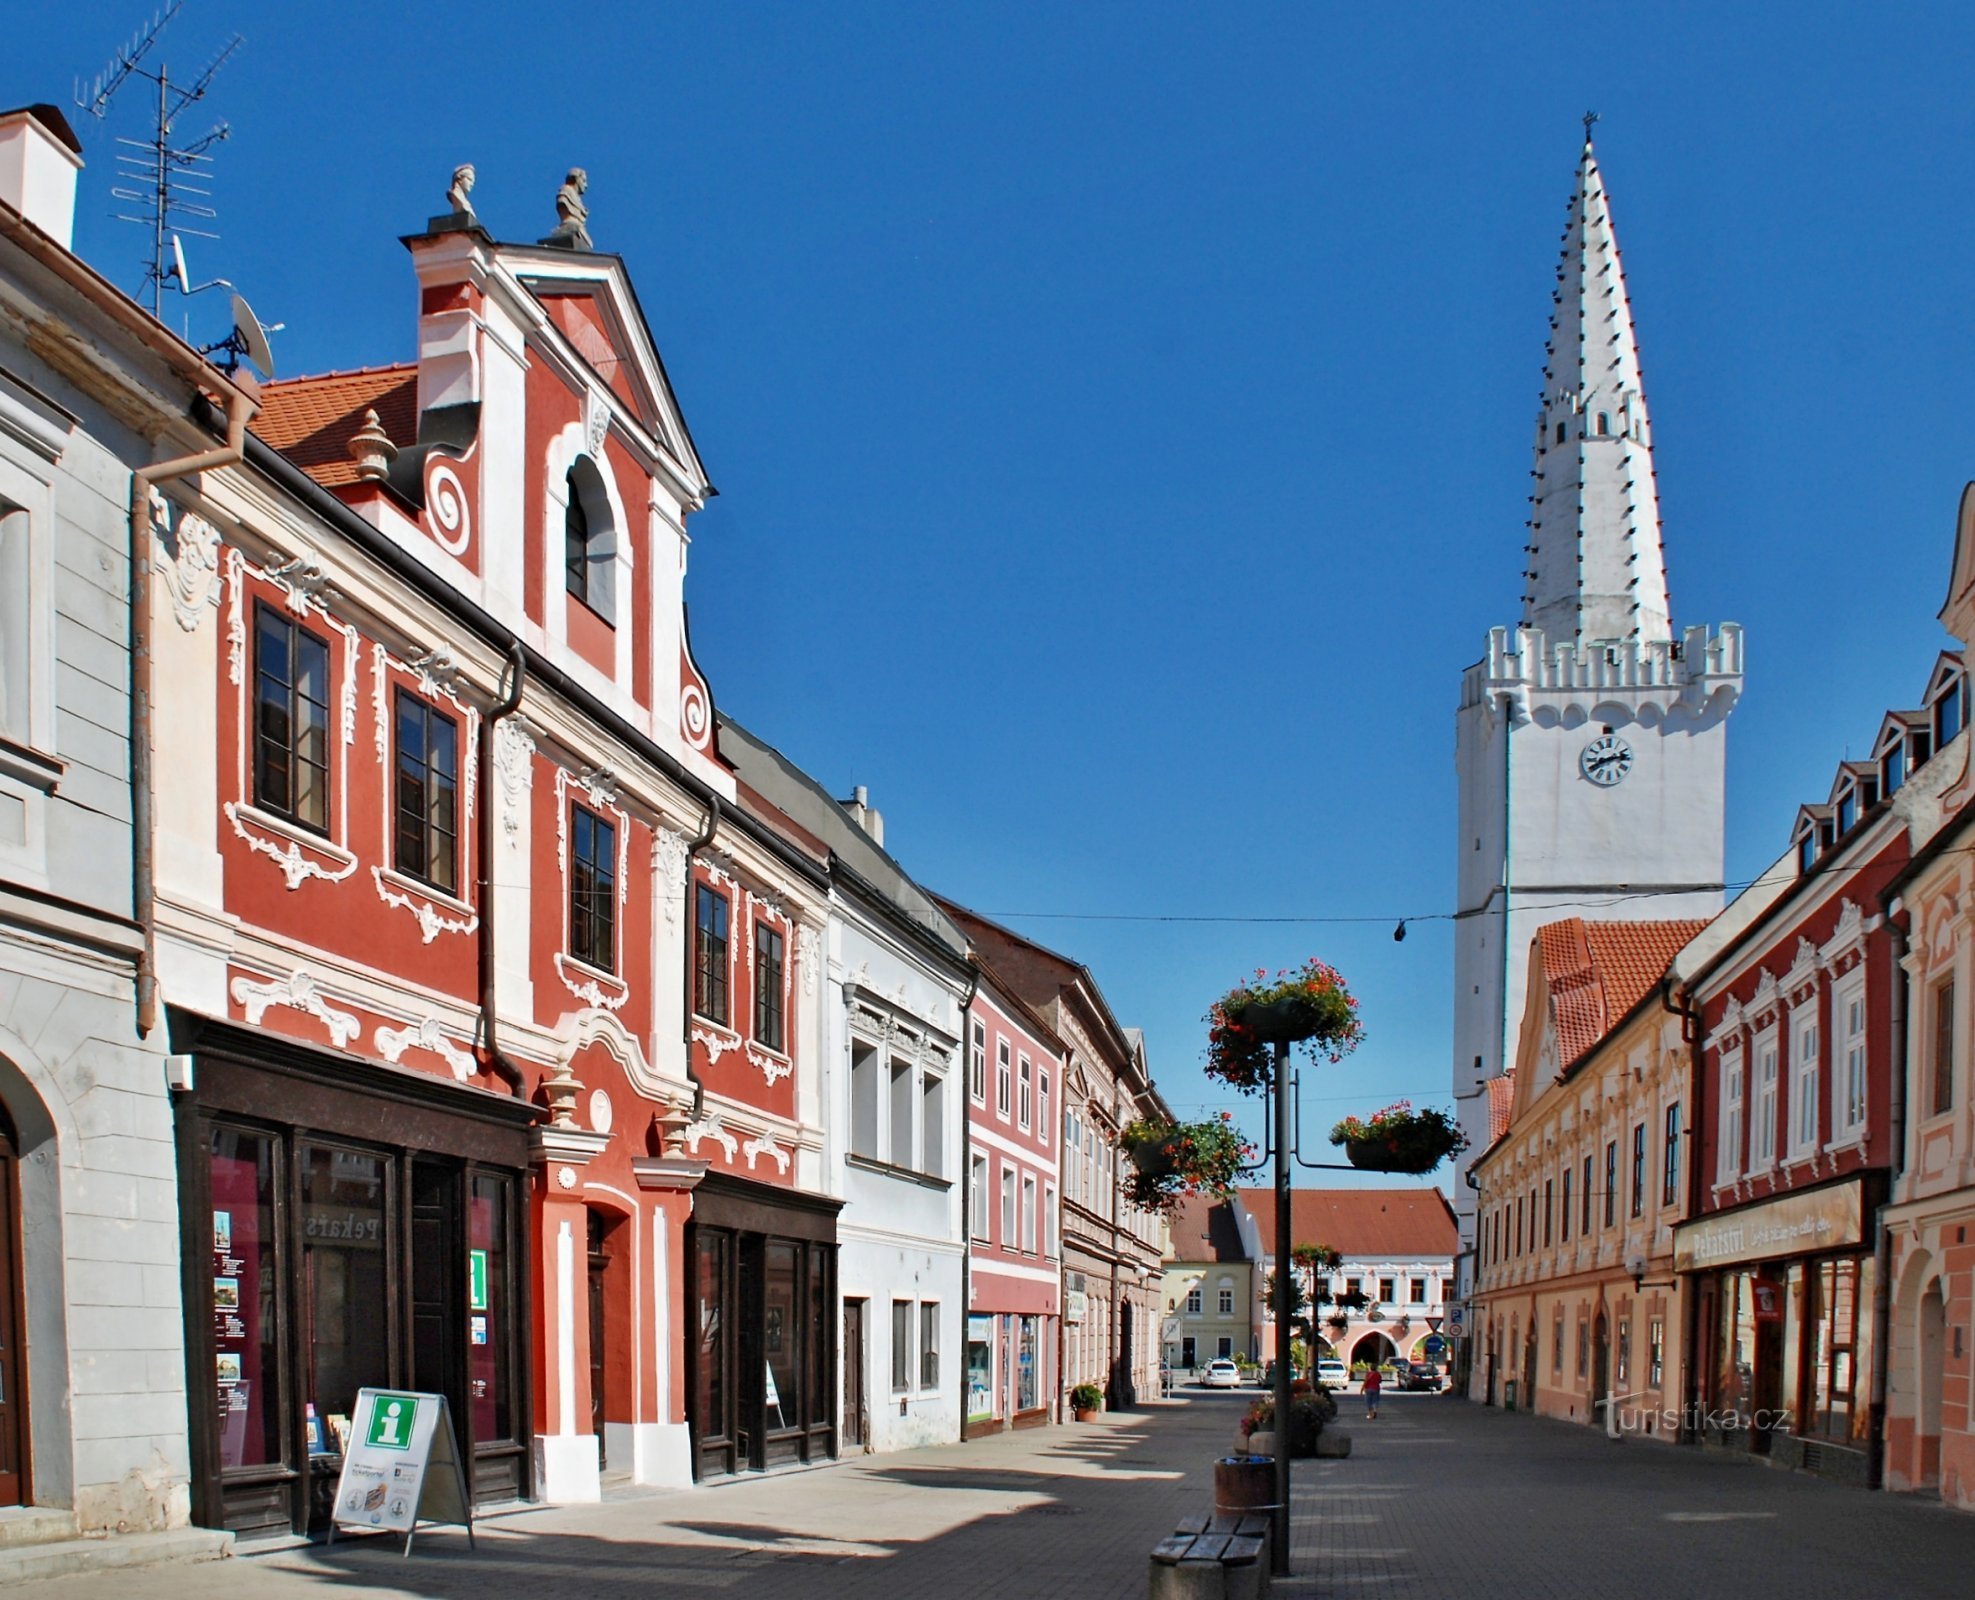 Ulica Jana Šverma, turistično informacijski center